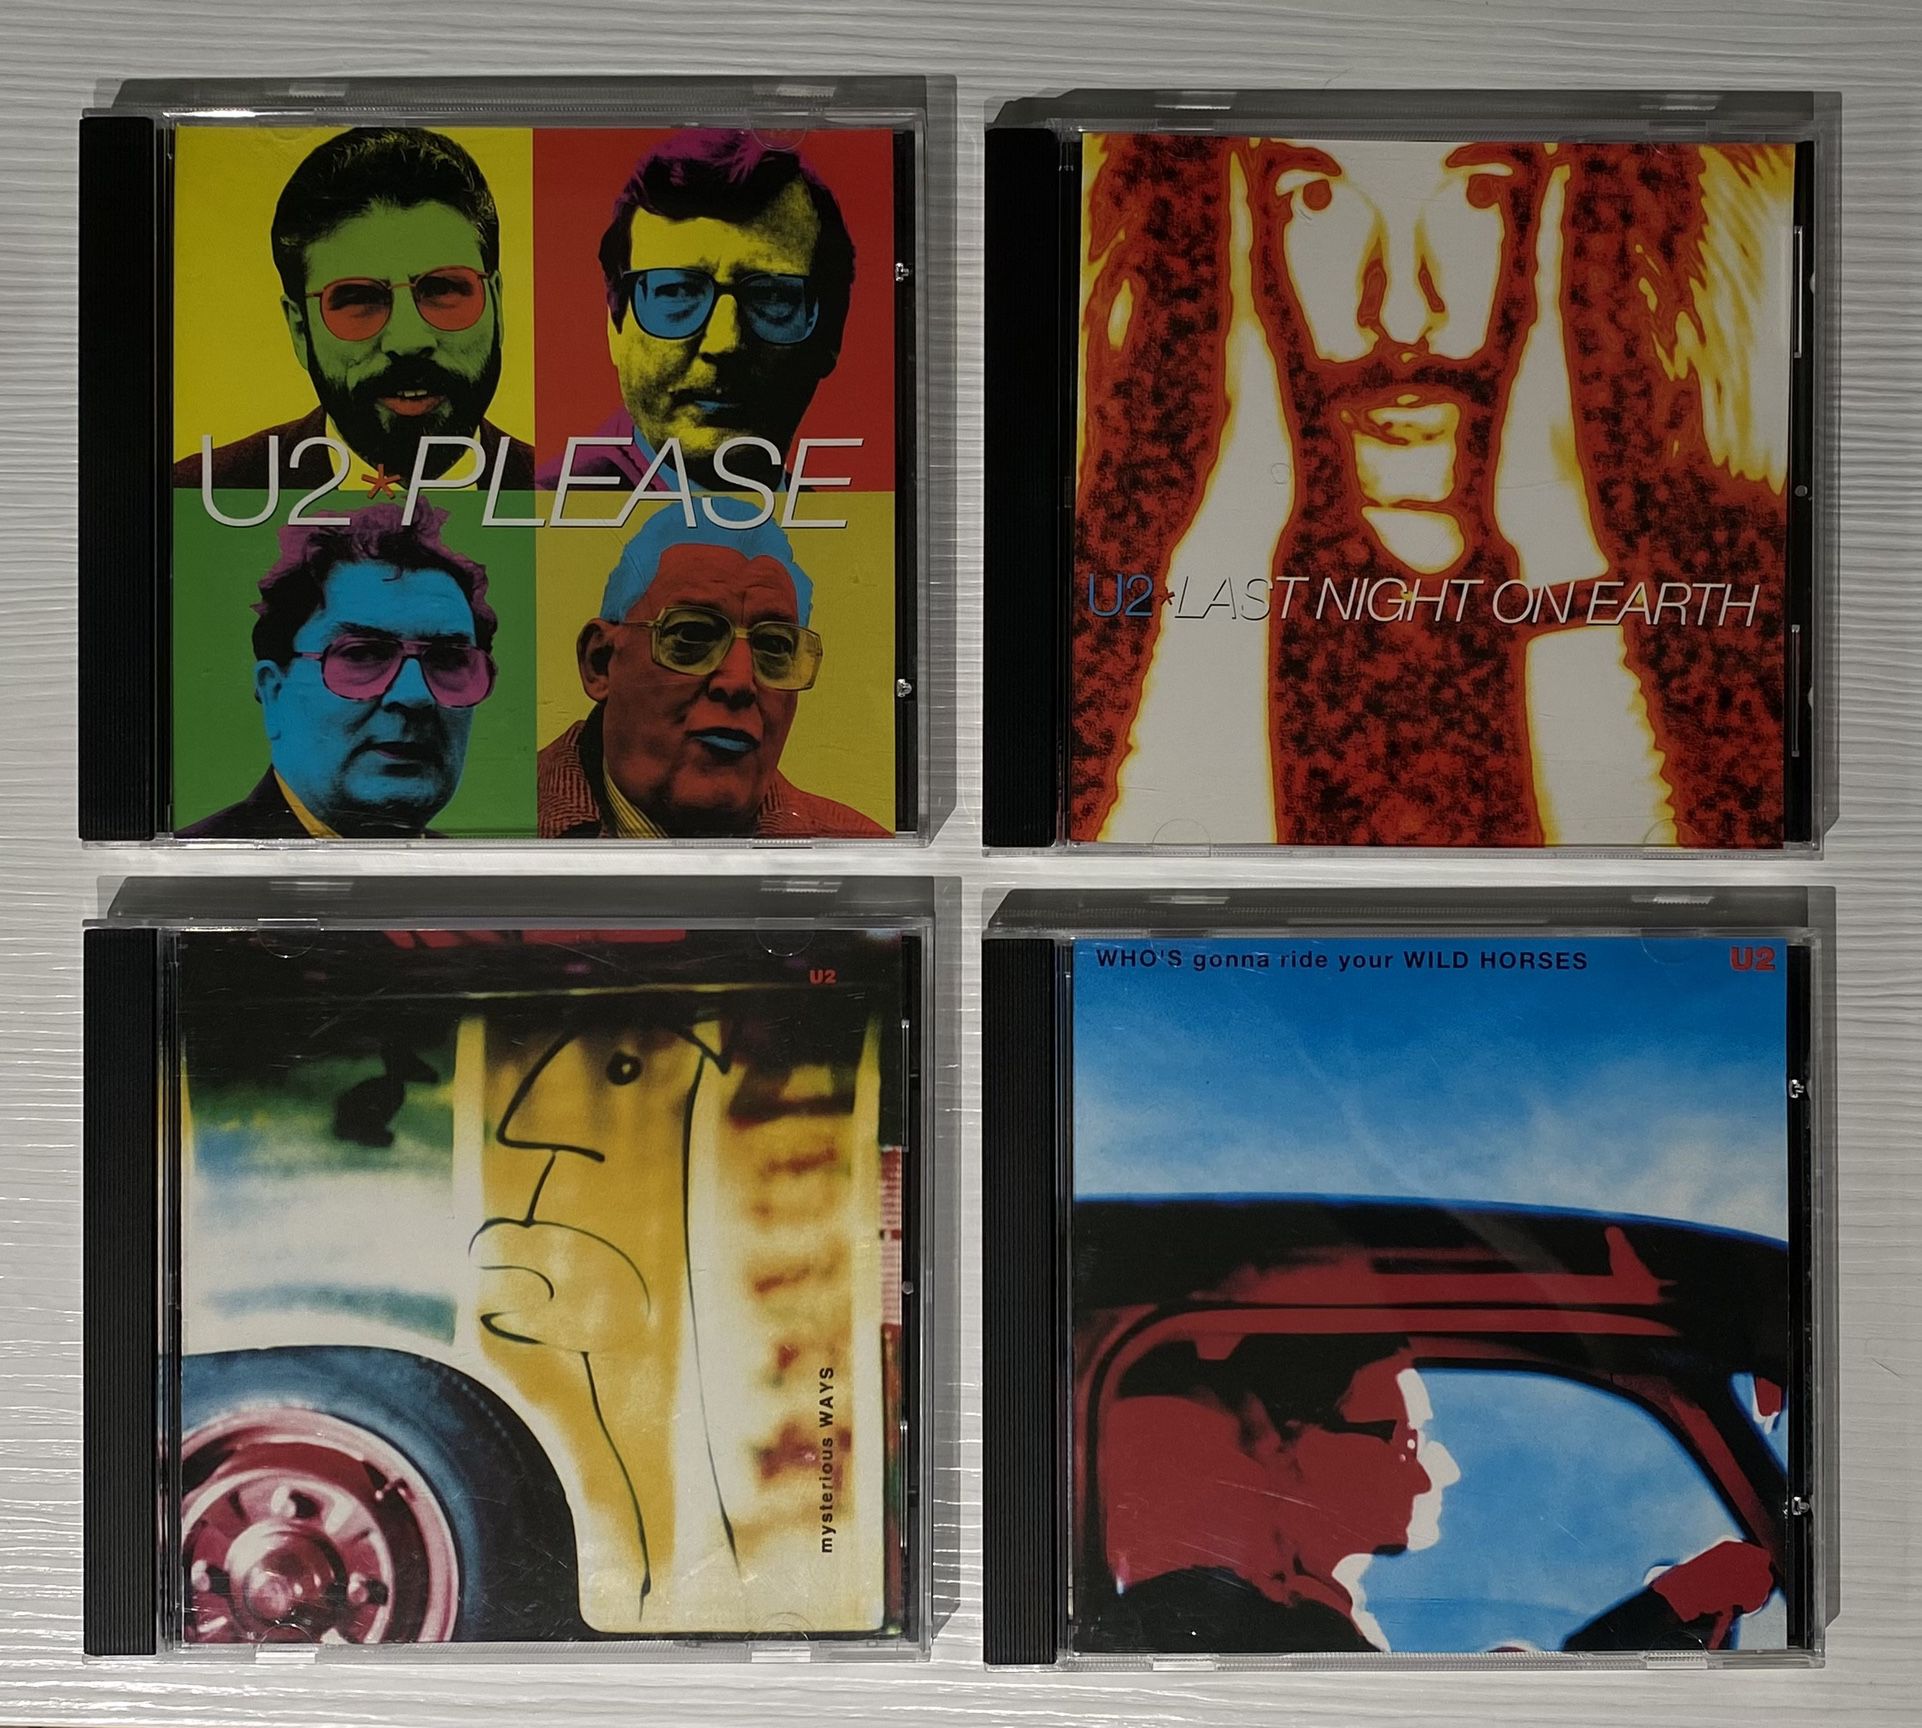 U2 - CD’s - DVD’s